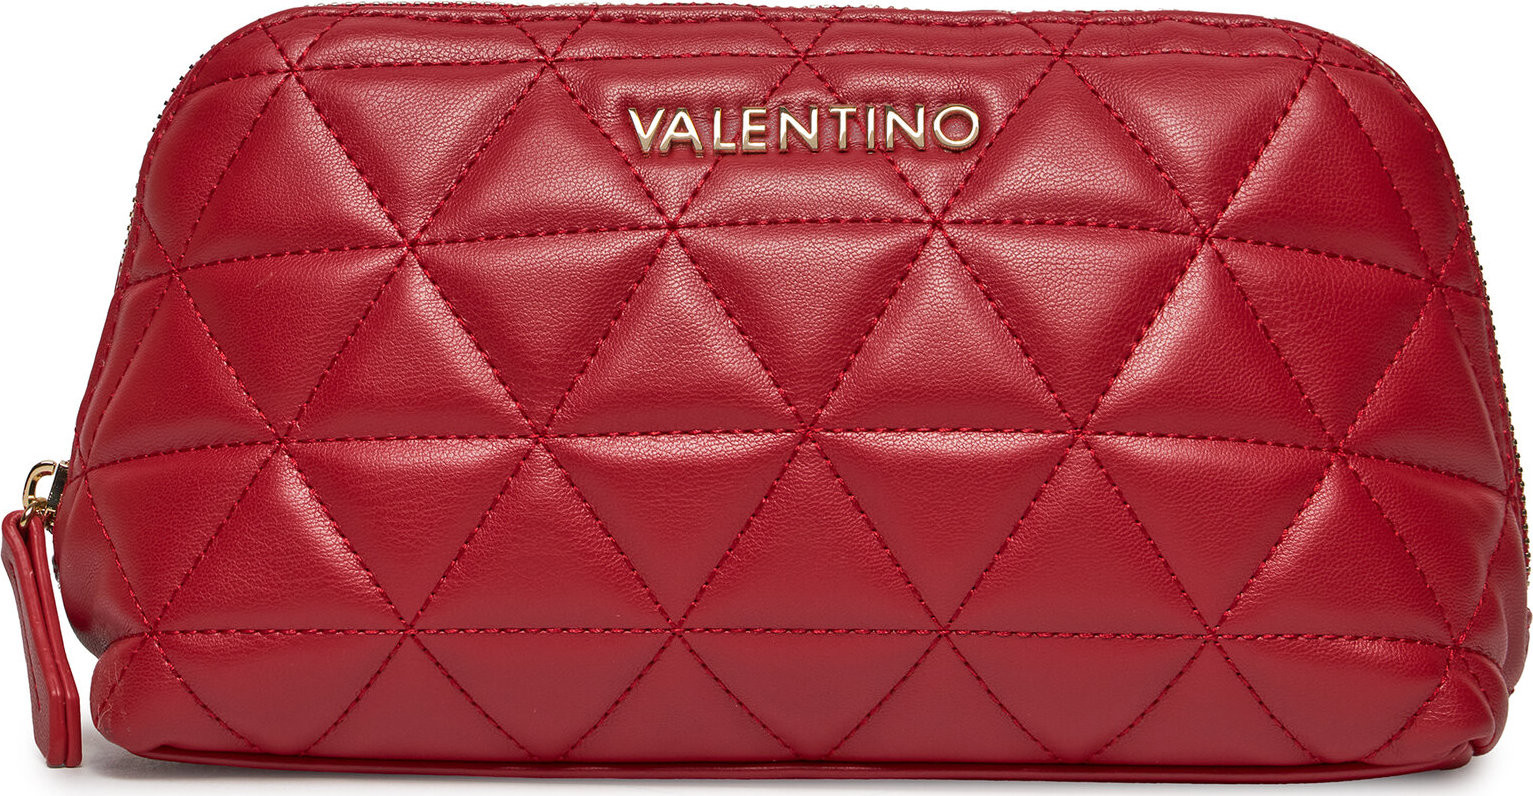 Kosmetický kufřík Valentino Carnaby VBE7LO555 Rosso 003